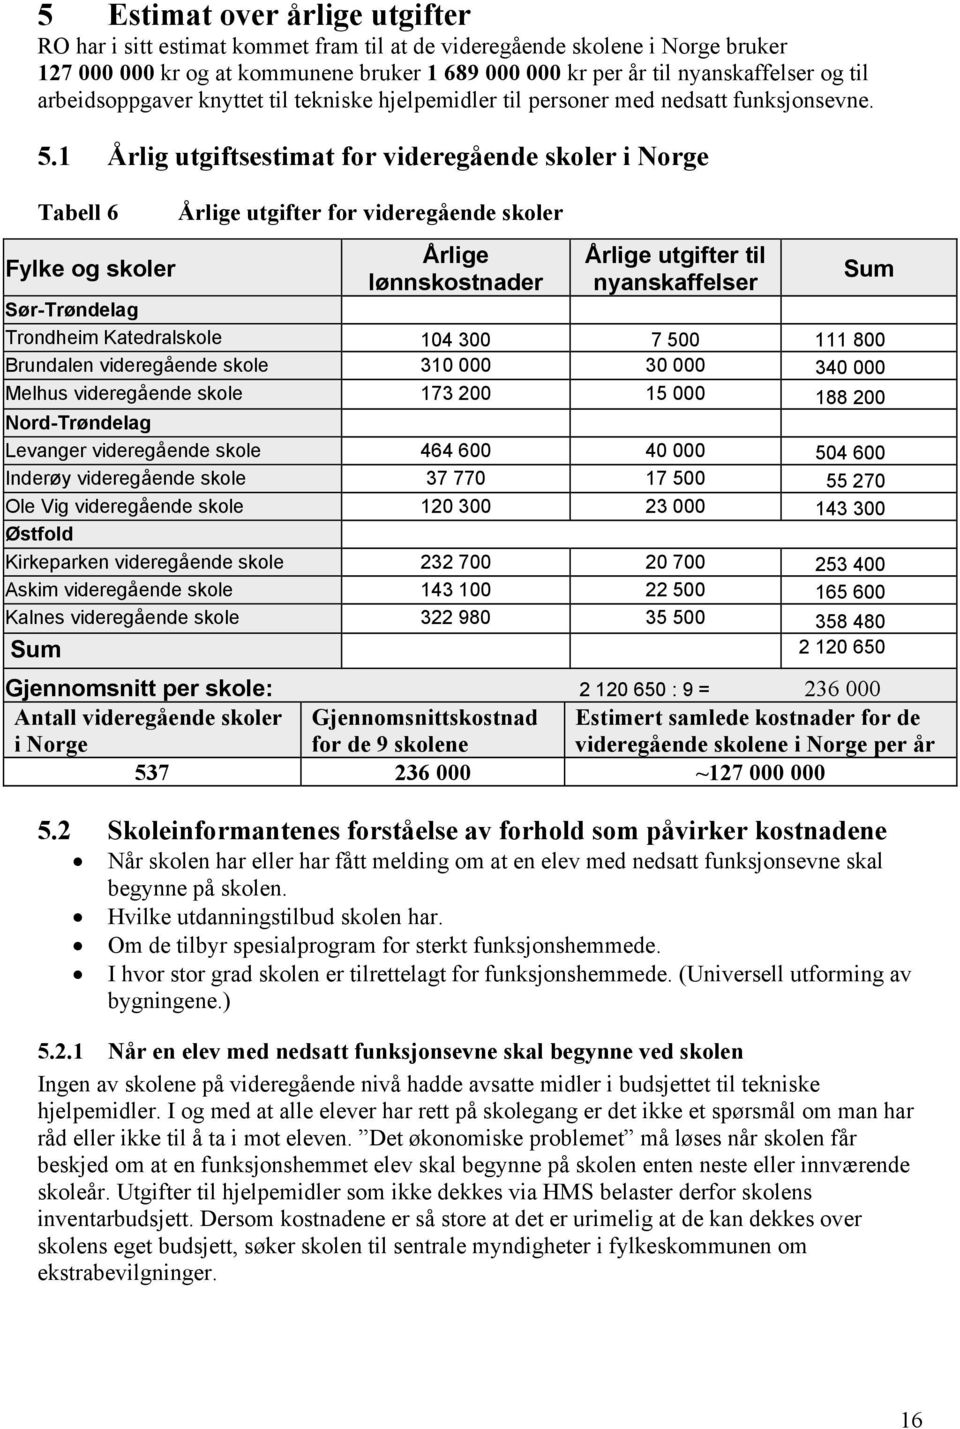 1 Årlig utgiftsestimat for videregående skoler i Norge Tabell 6 Fylke og skoler Årlige utgifter for videregående skoler Årlige lønnskostnader Årlige utgifter til nyanskaffelser Sum Sør-Trøndelag